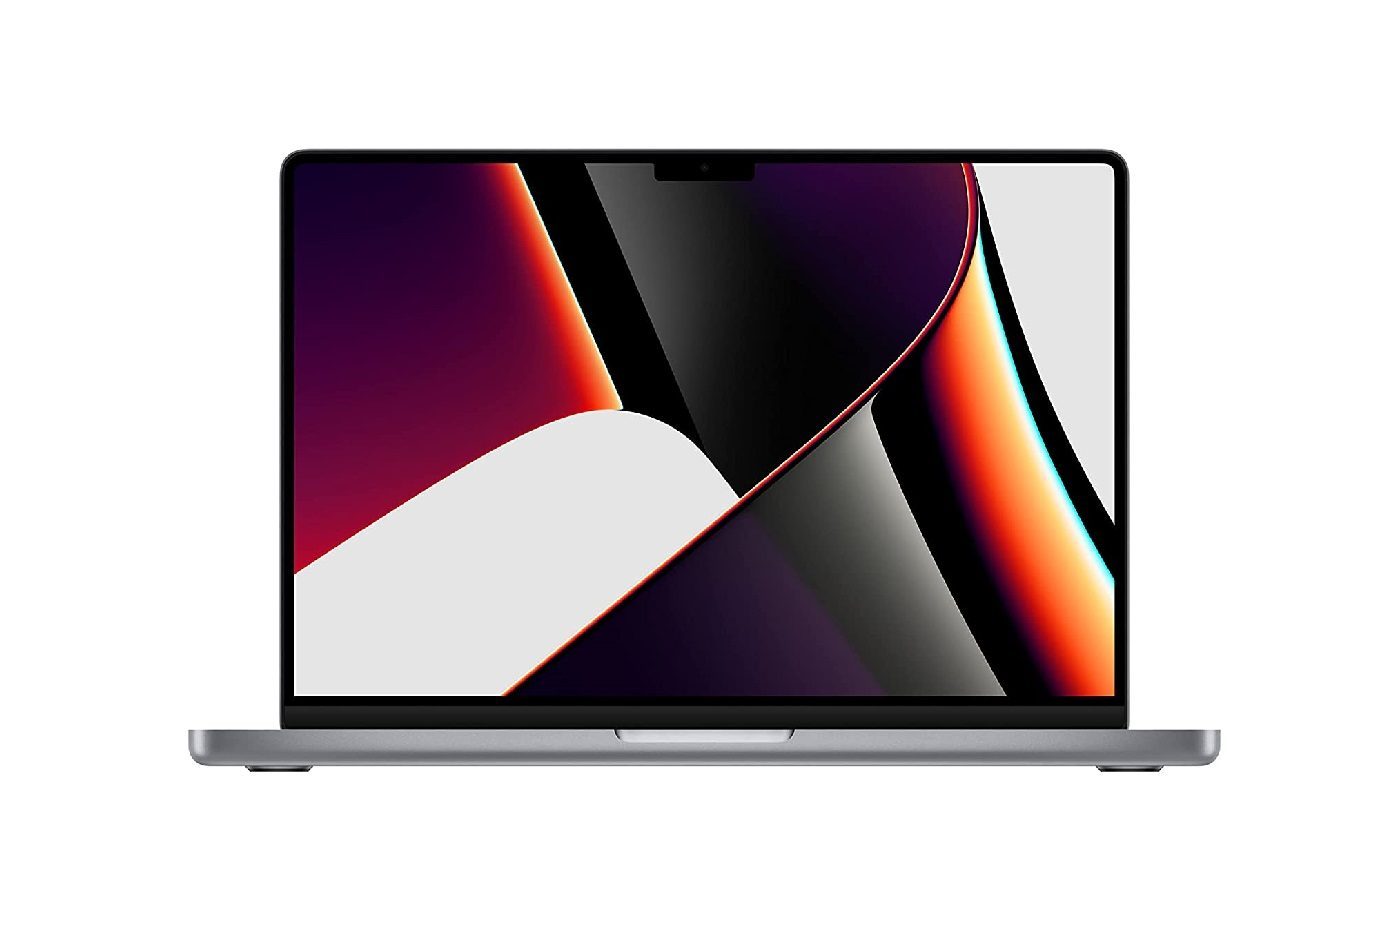 Le performant MacBook Pro avec sa puce M1 passe sous les 2 000 € - Numerama